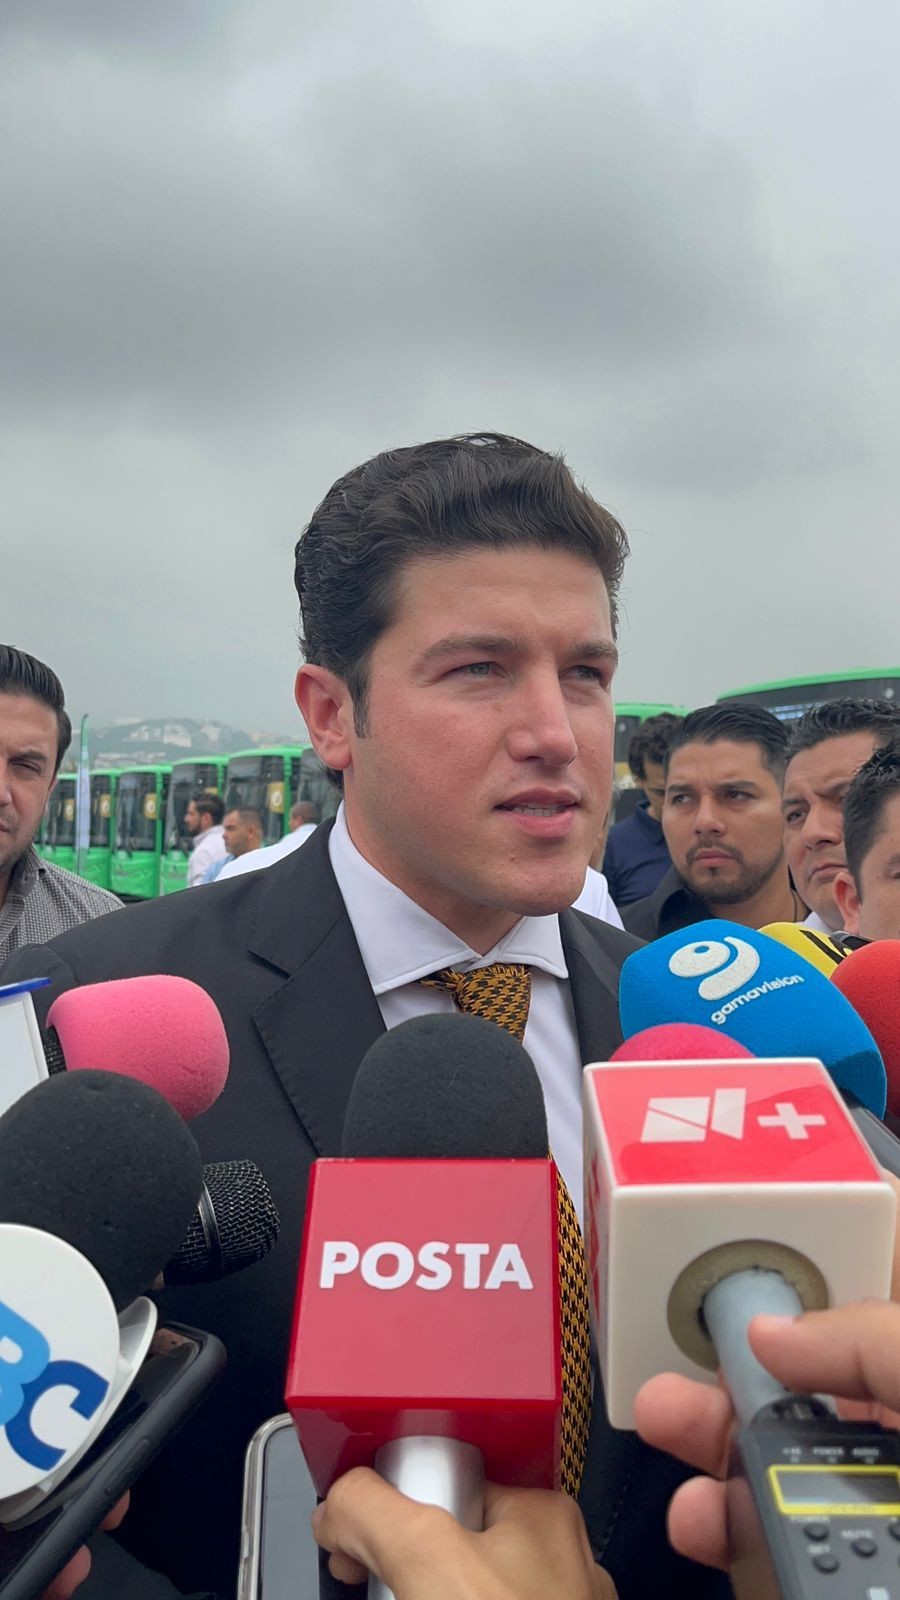 El gobernador de Nuevo León, Samuel García Sepúlveda, aseguró que la protesta de Arturo Salinas no tiene validez. Foto: Cynthia Pardo